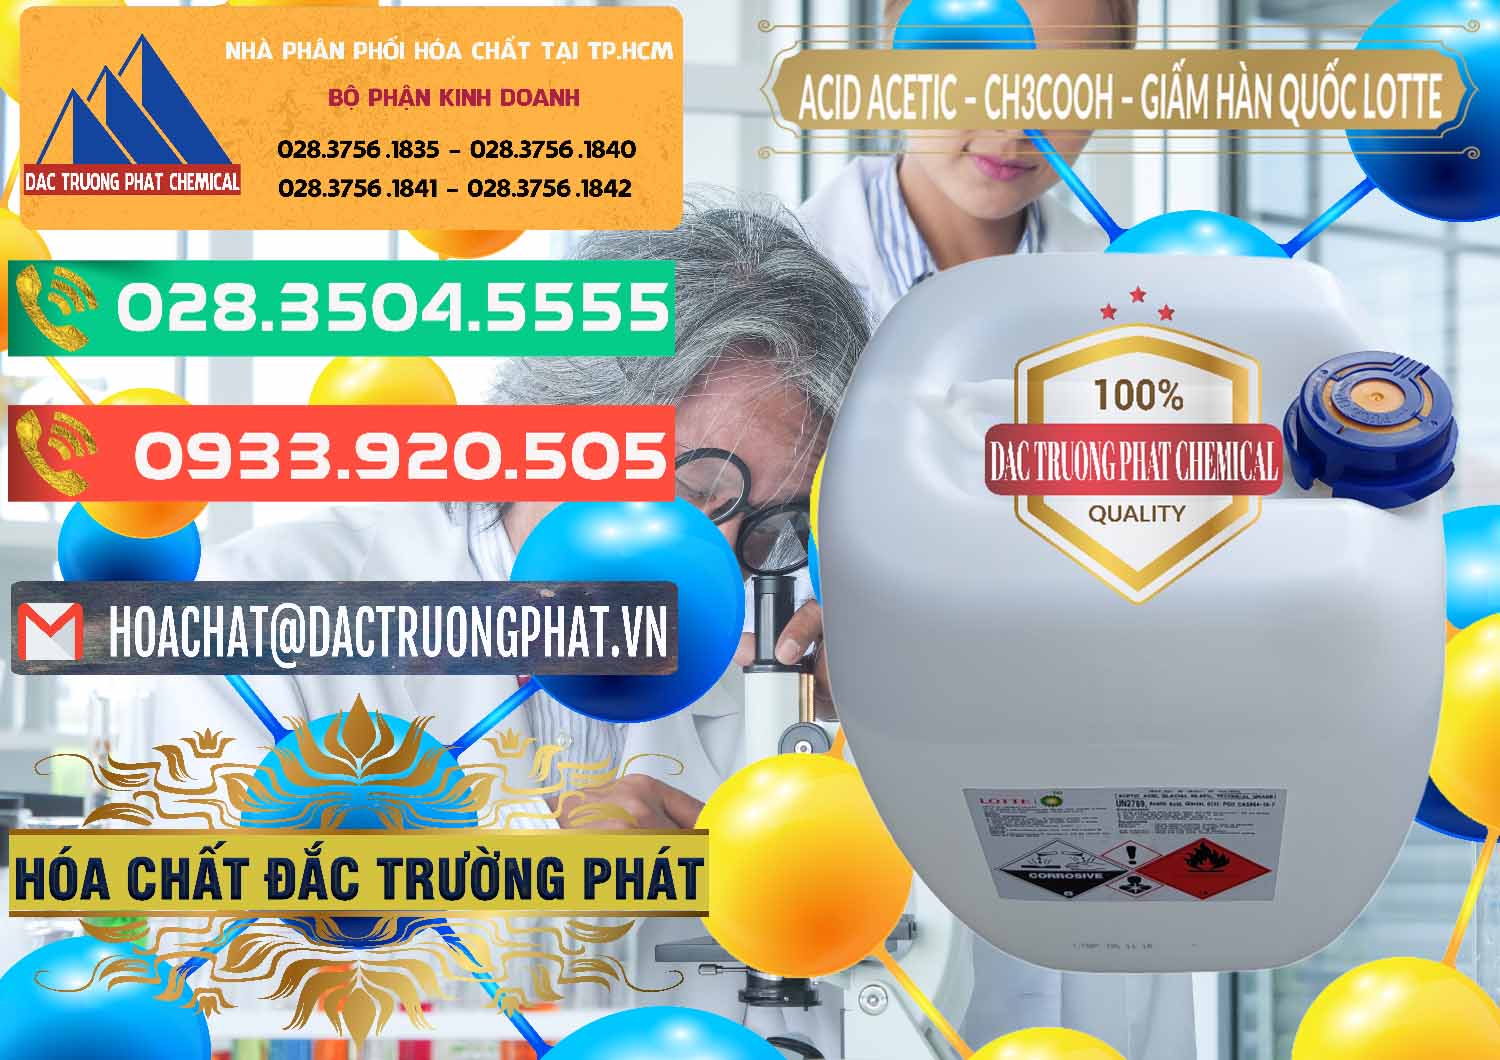 Nơi nhập khẩu _ bán Acetic Acid – Axit Acetic Hàn Quốc Lotte Korea - 0002 - Công ty cung ứng - phân phối hóa chất tại TP.HCM - congtyhoachat.com.vn